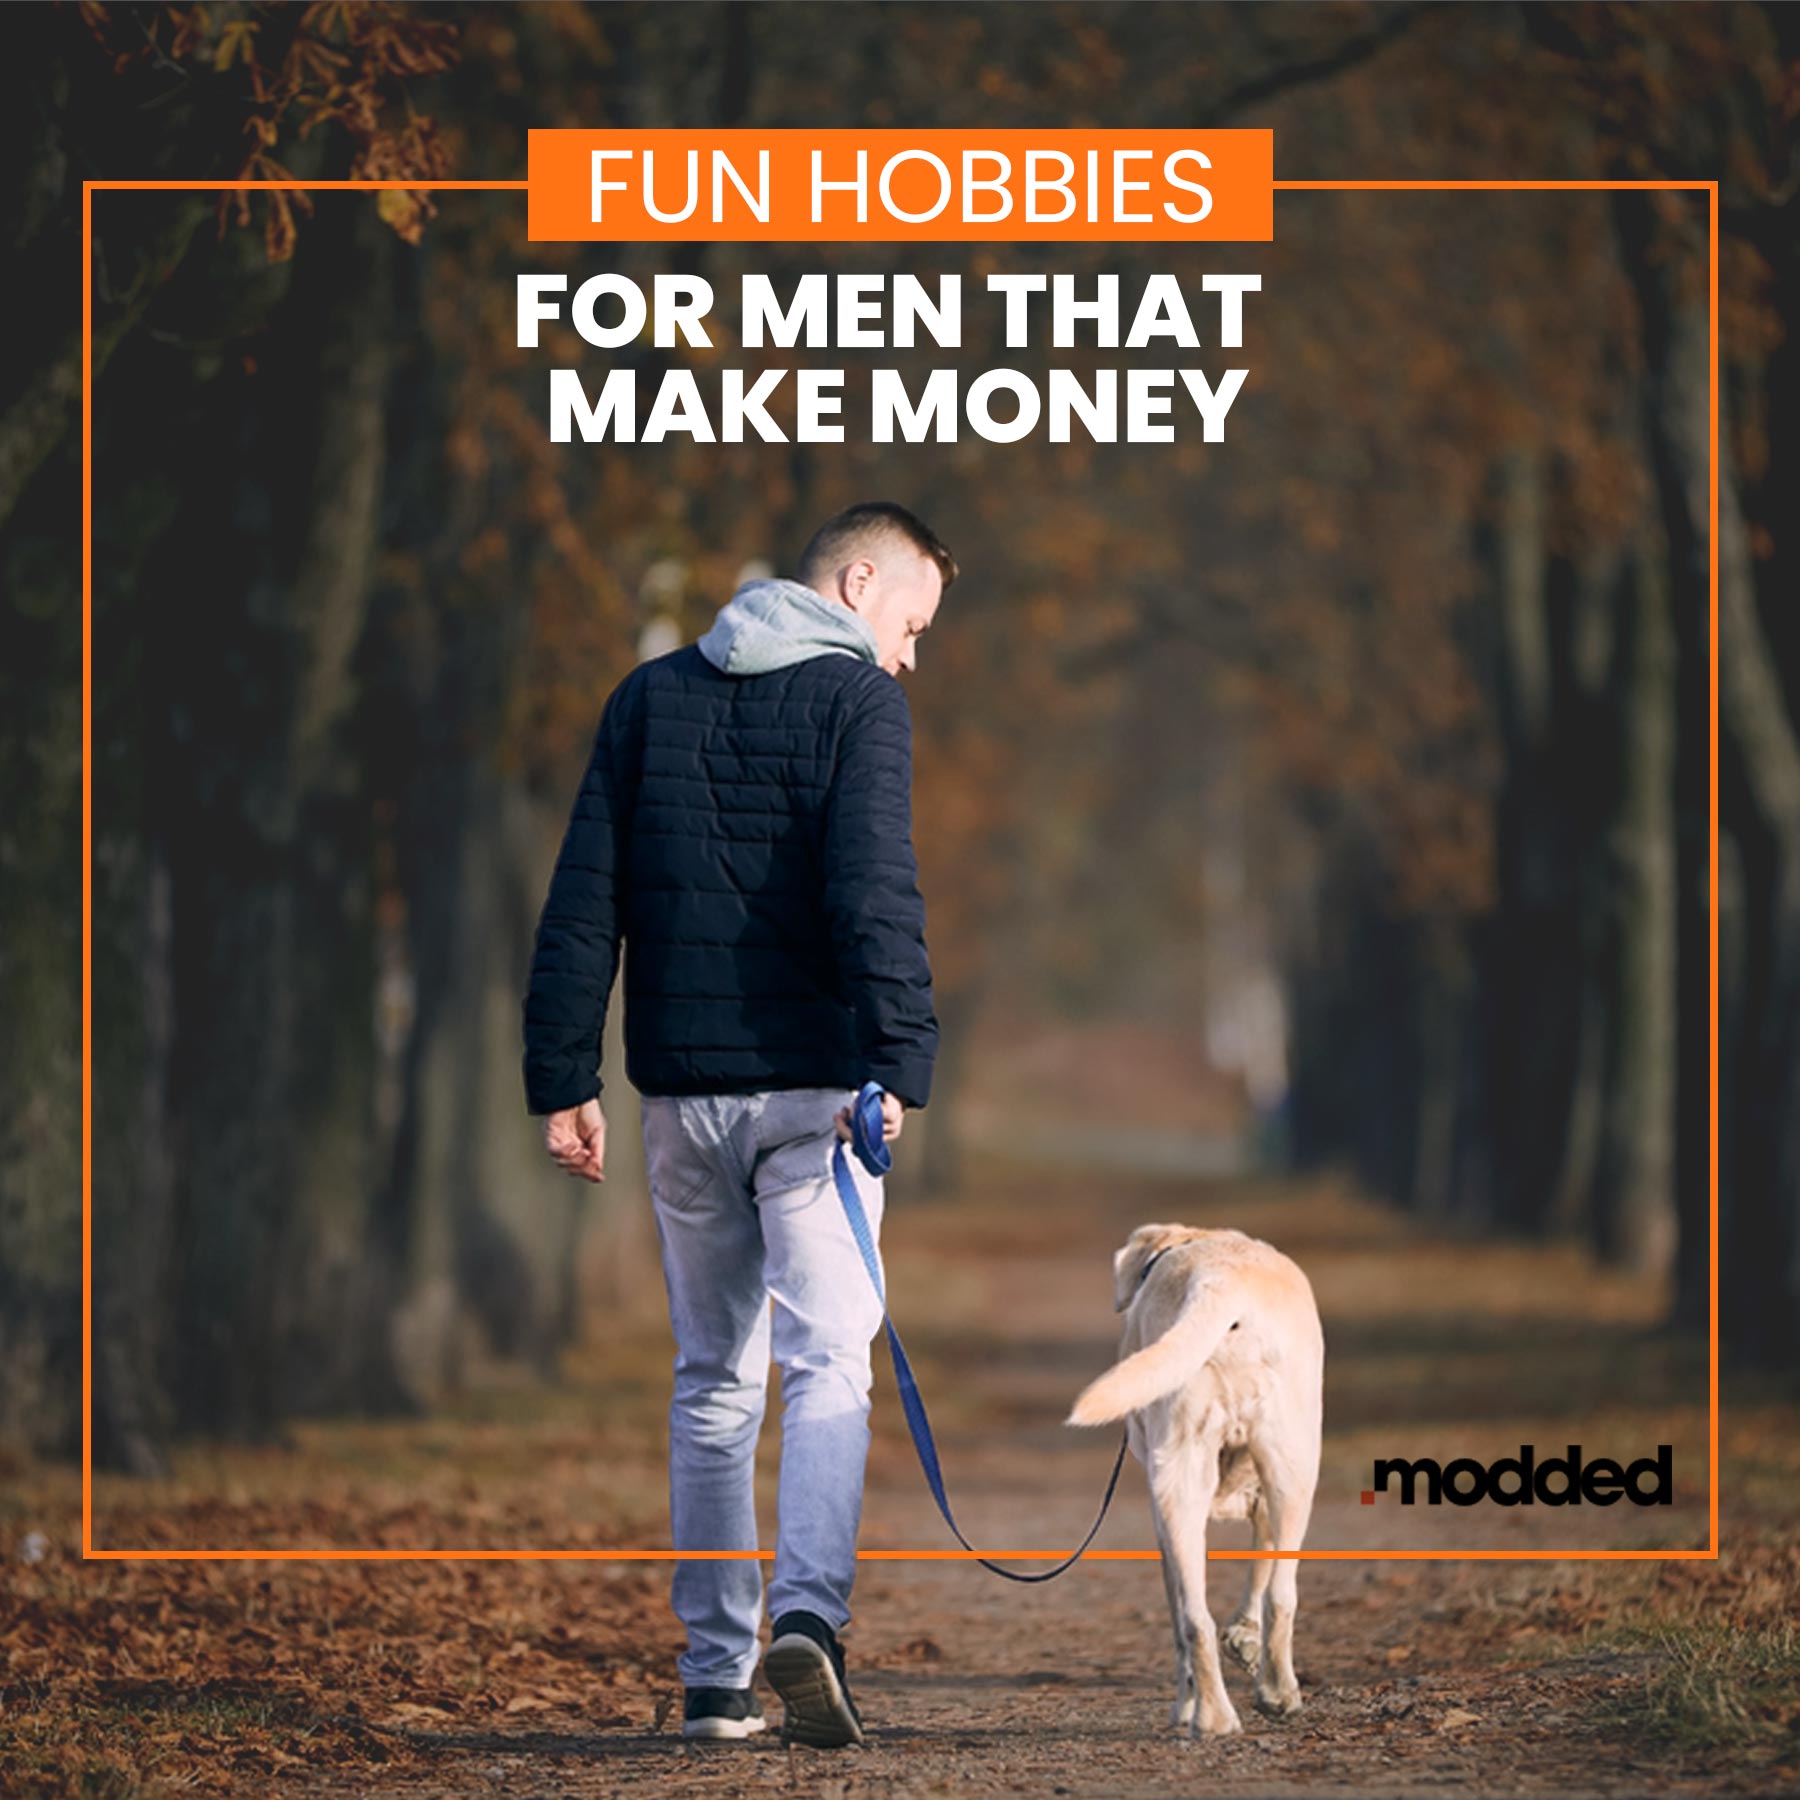 Fun Hobbies for Men That Make Money - Modded